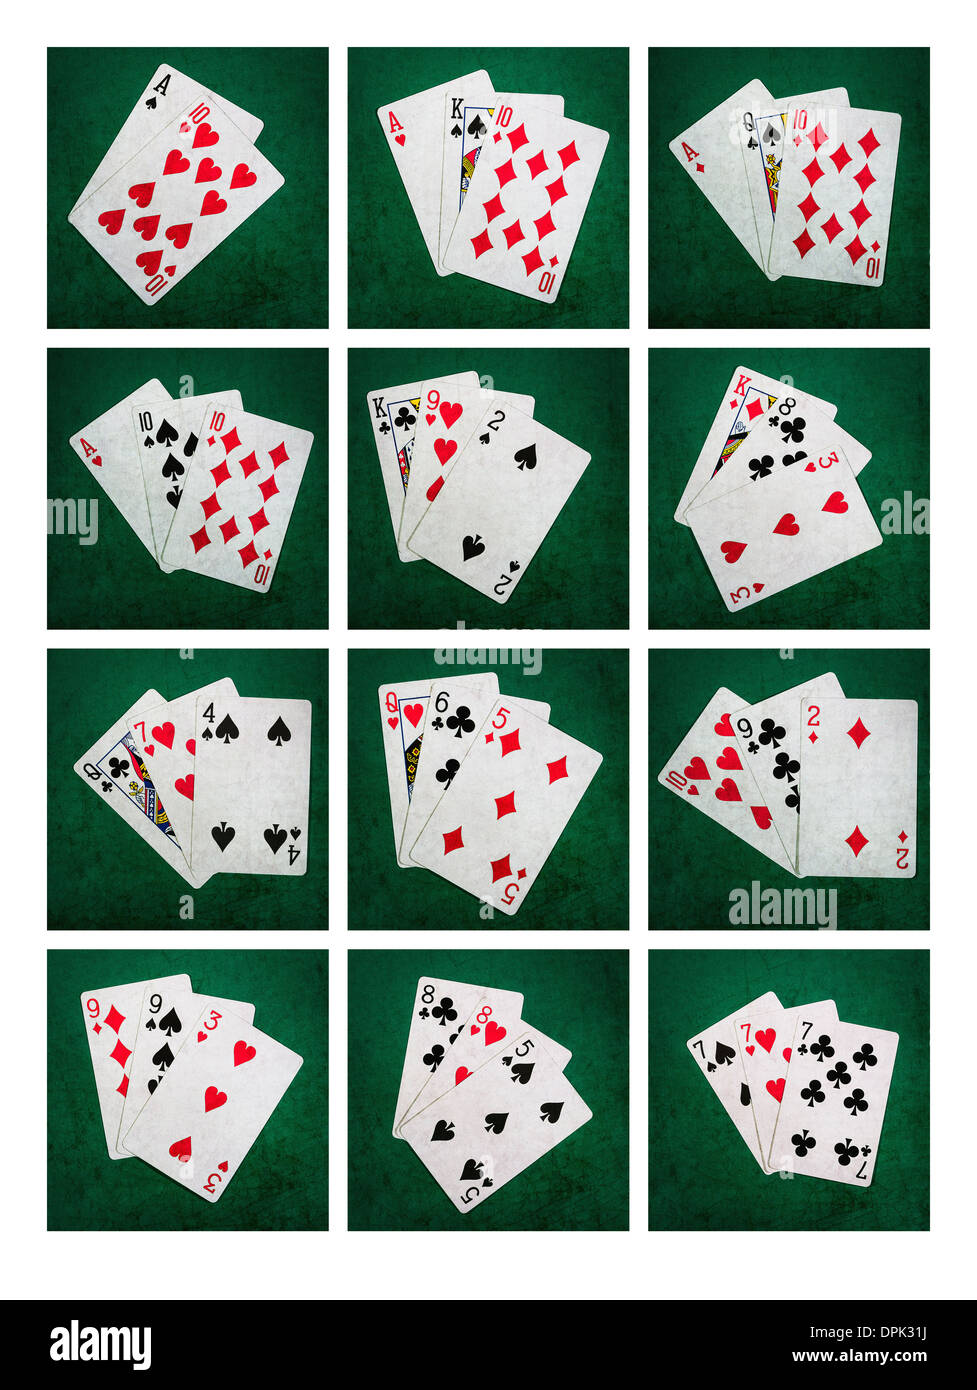 Collage einundzwanzig. Collage von 12 Fotos von Spielkarten bilden die Blackjack-Kombinationen von einundzwanzig Punkte Stockfoto